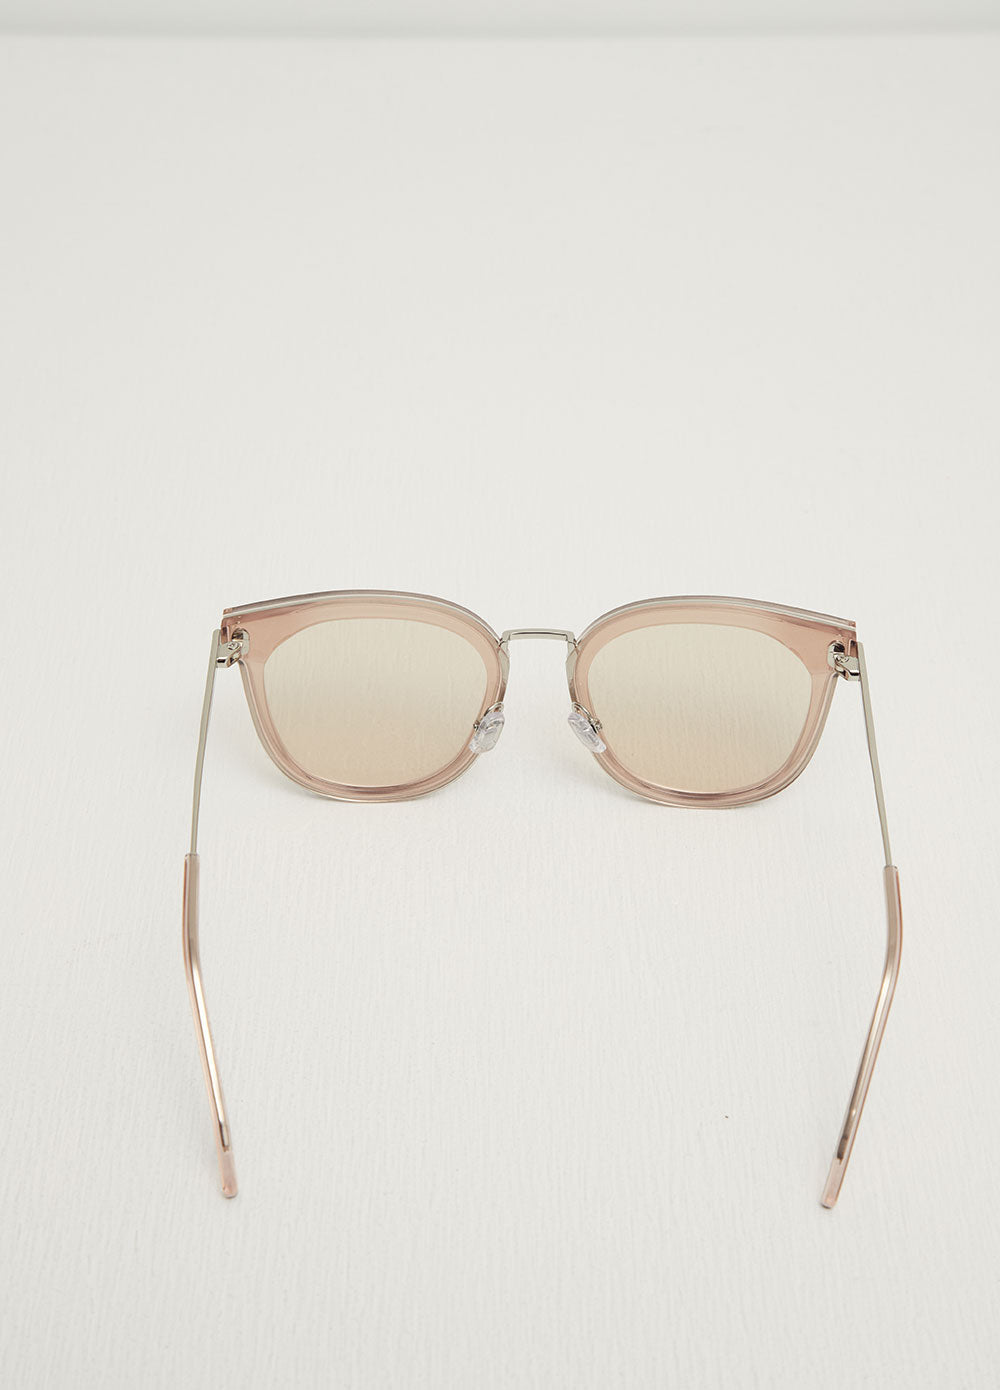 Mamabu 01 Sunglasses